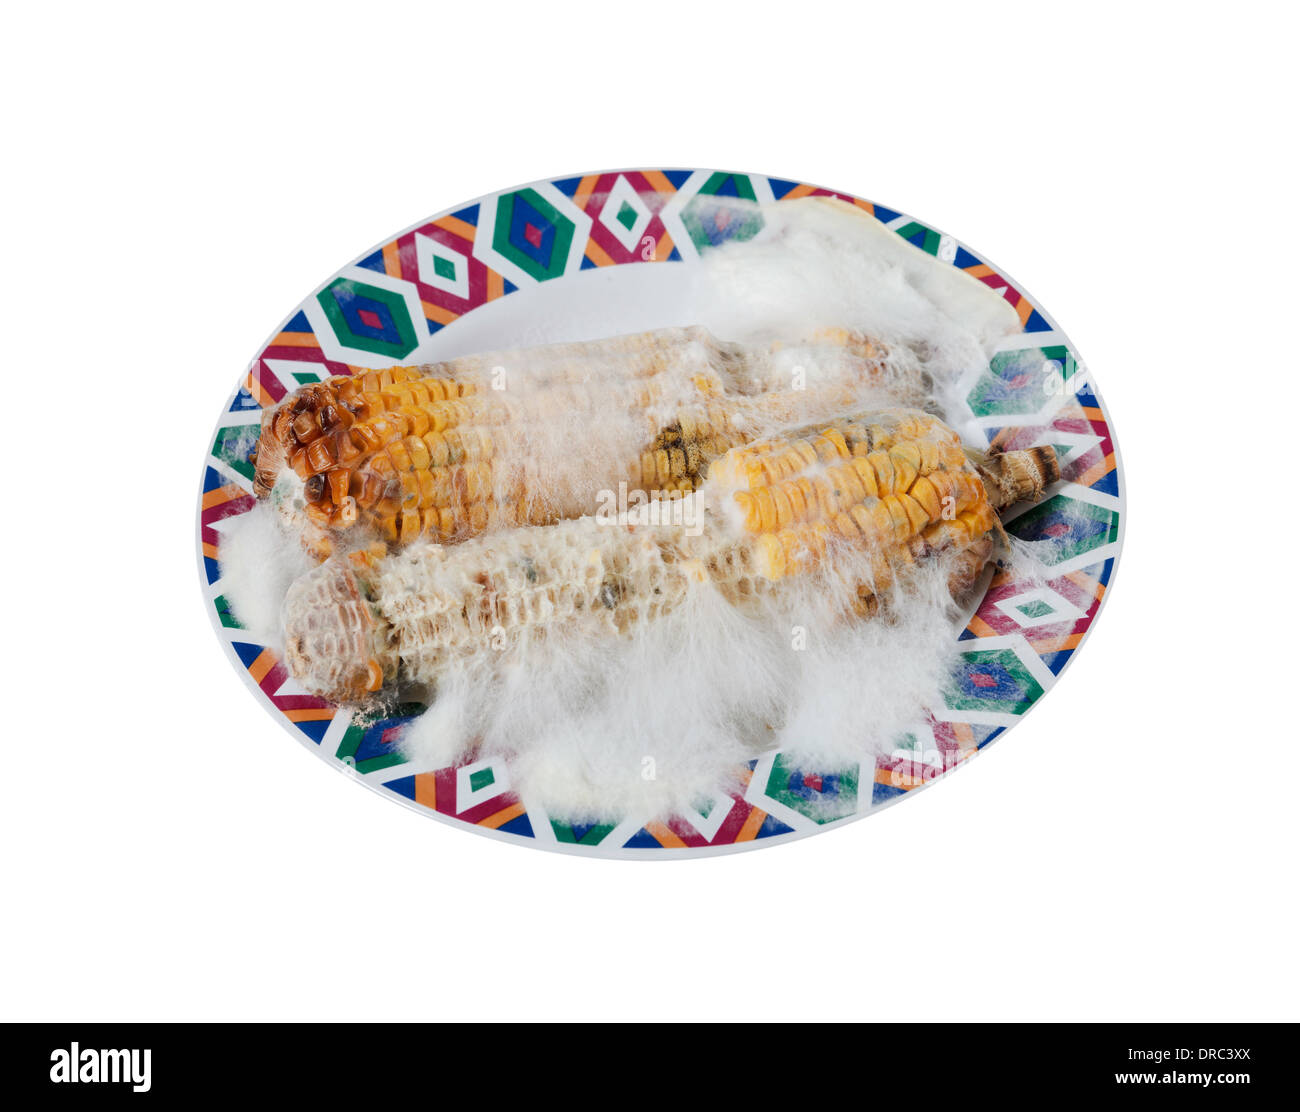 Maïs grillé pourri avec champignon isolé sur fond blanc Banque D'Images